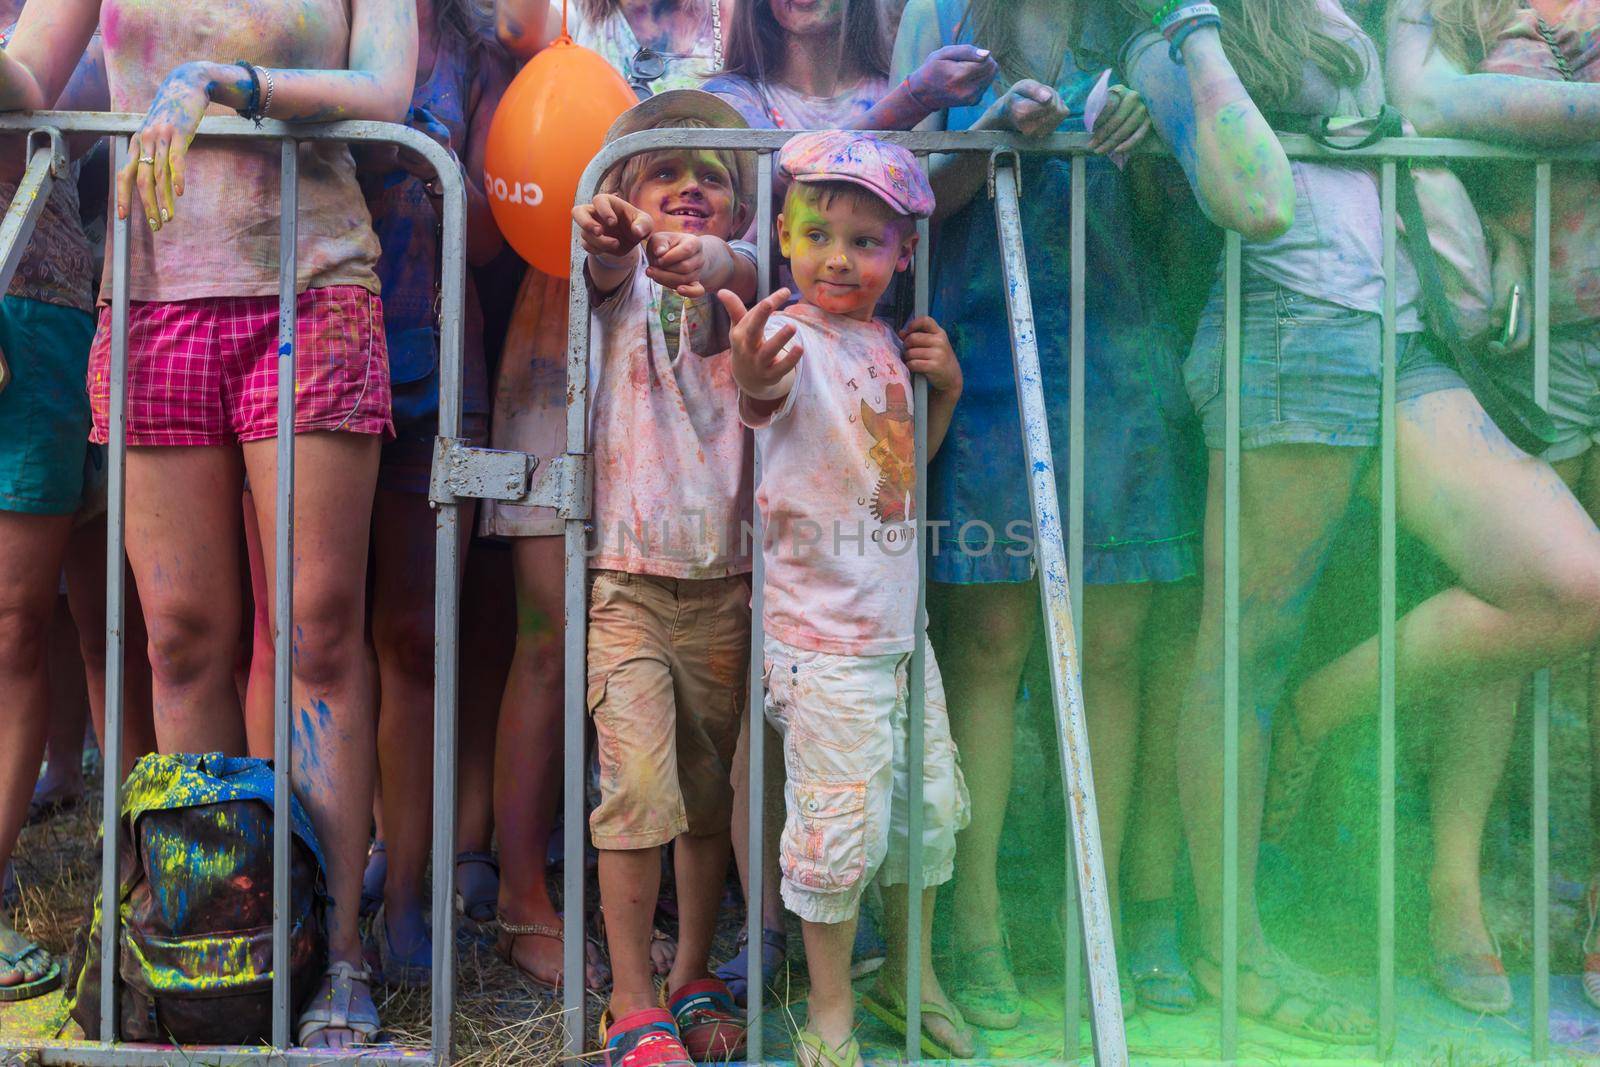 Festival of colors ColorFest by palinchak